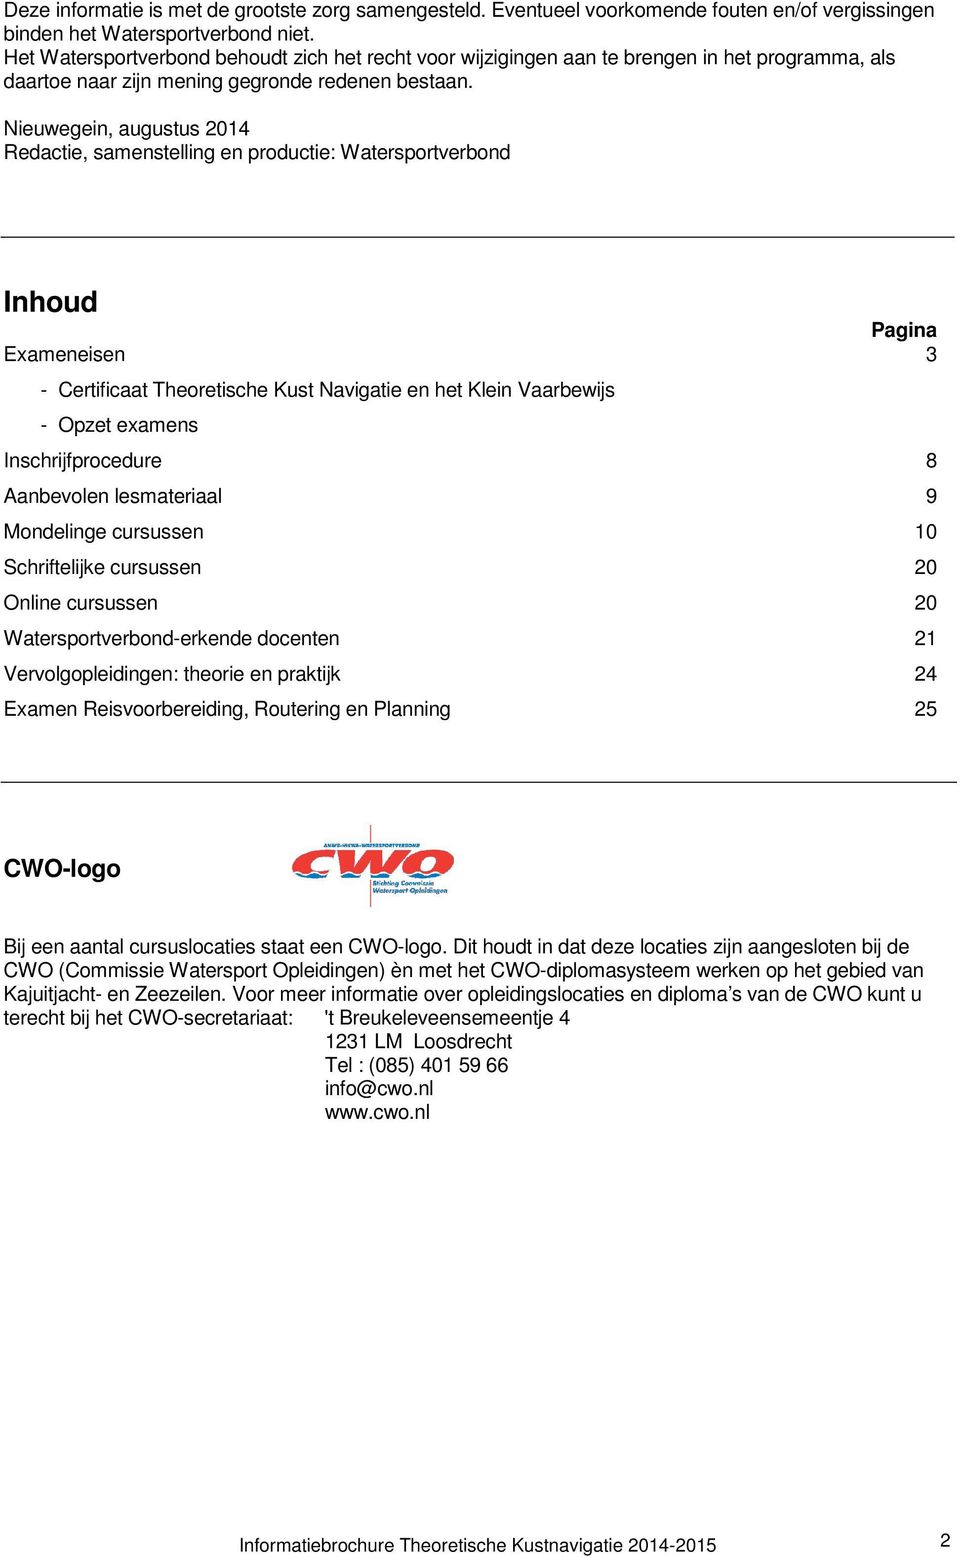 Nieuwegein, augustus 2014 Redactie, samenstelling en productie: Watersportverbond Inhoud Pagina Exameneisen 3 - Certificaat Theoretische Kust Navigatie en het Klein Vaarbewijs - Opzet examens